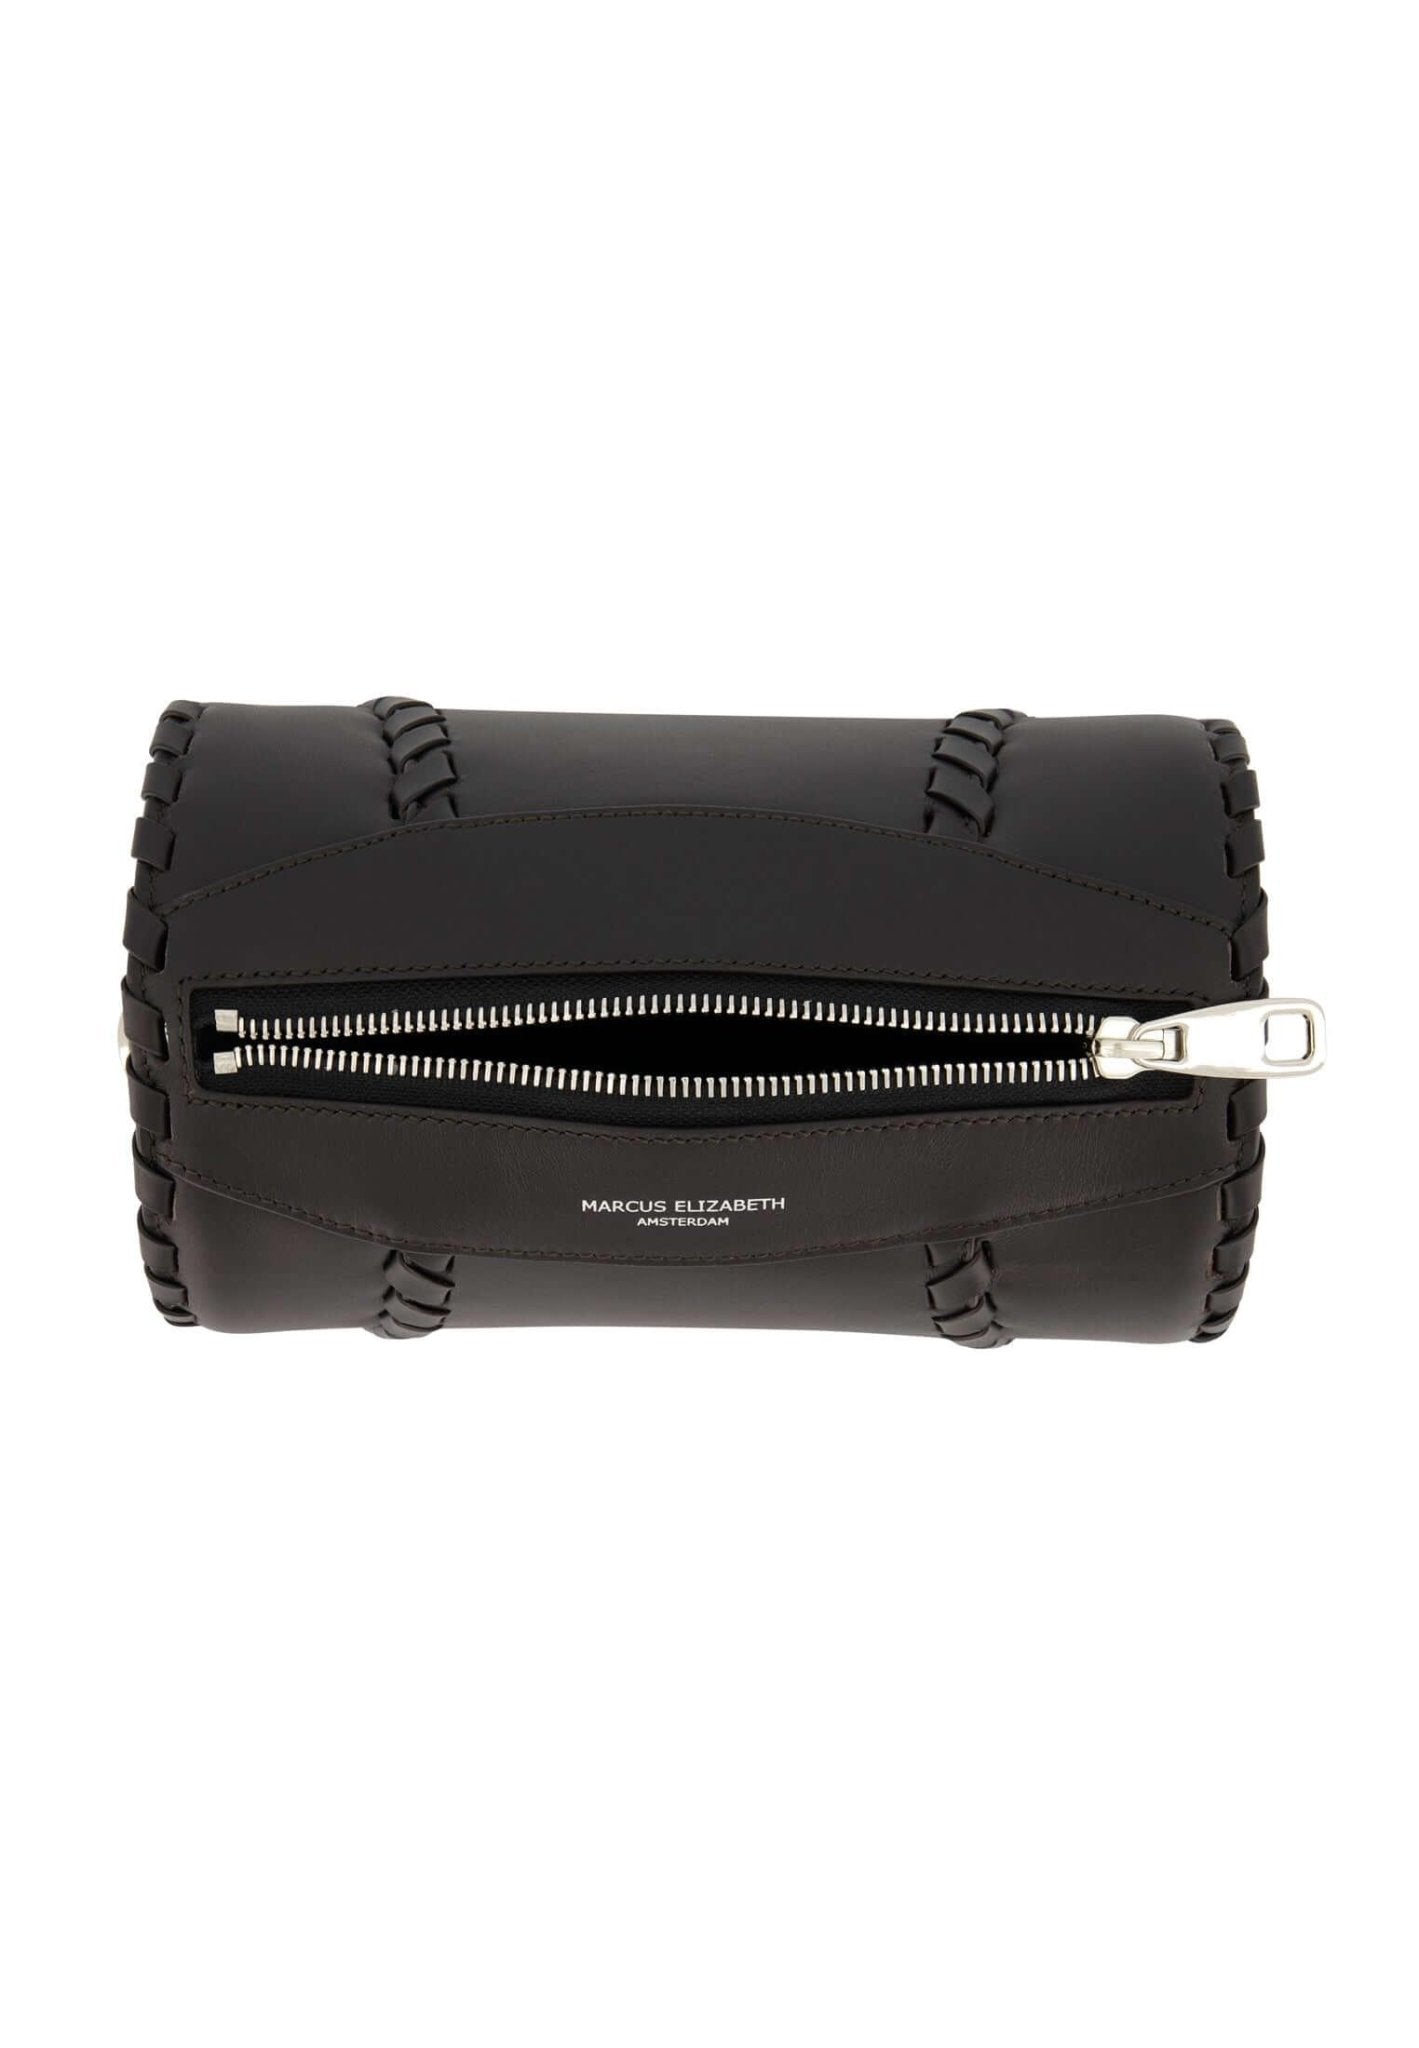 Tube Shoulder Bag Black - MARCUS ELIZABETH - Handbags - MARCUS ELIZABETH - Tube Shoulder Bag Black - MARCUS ELIZABETH